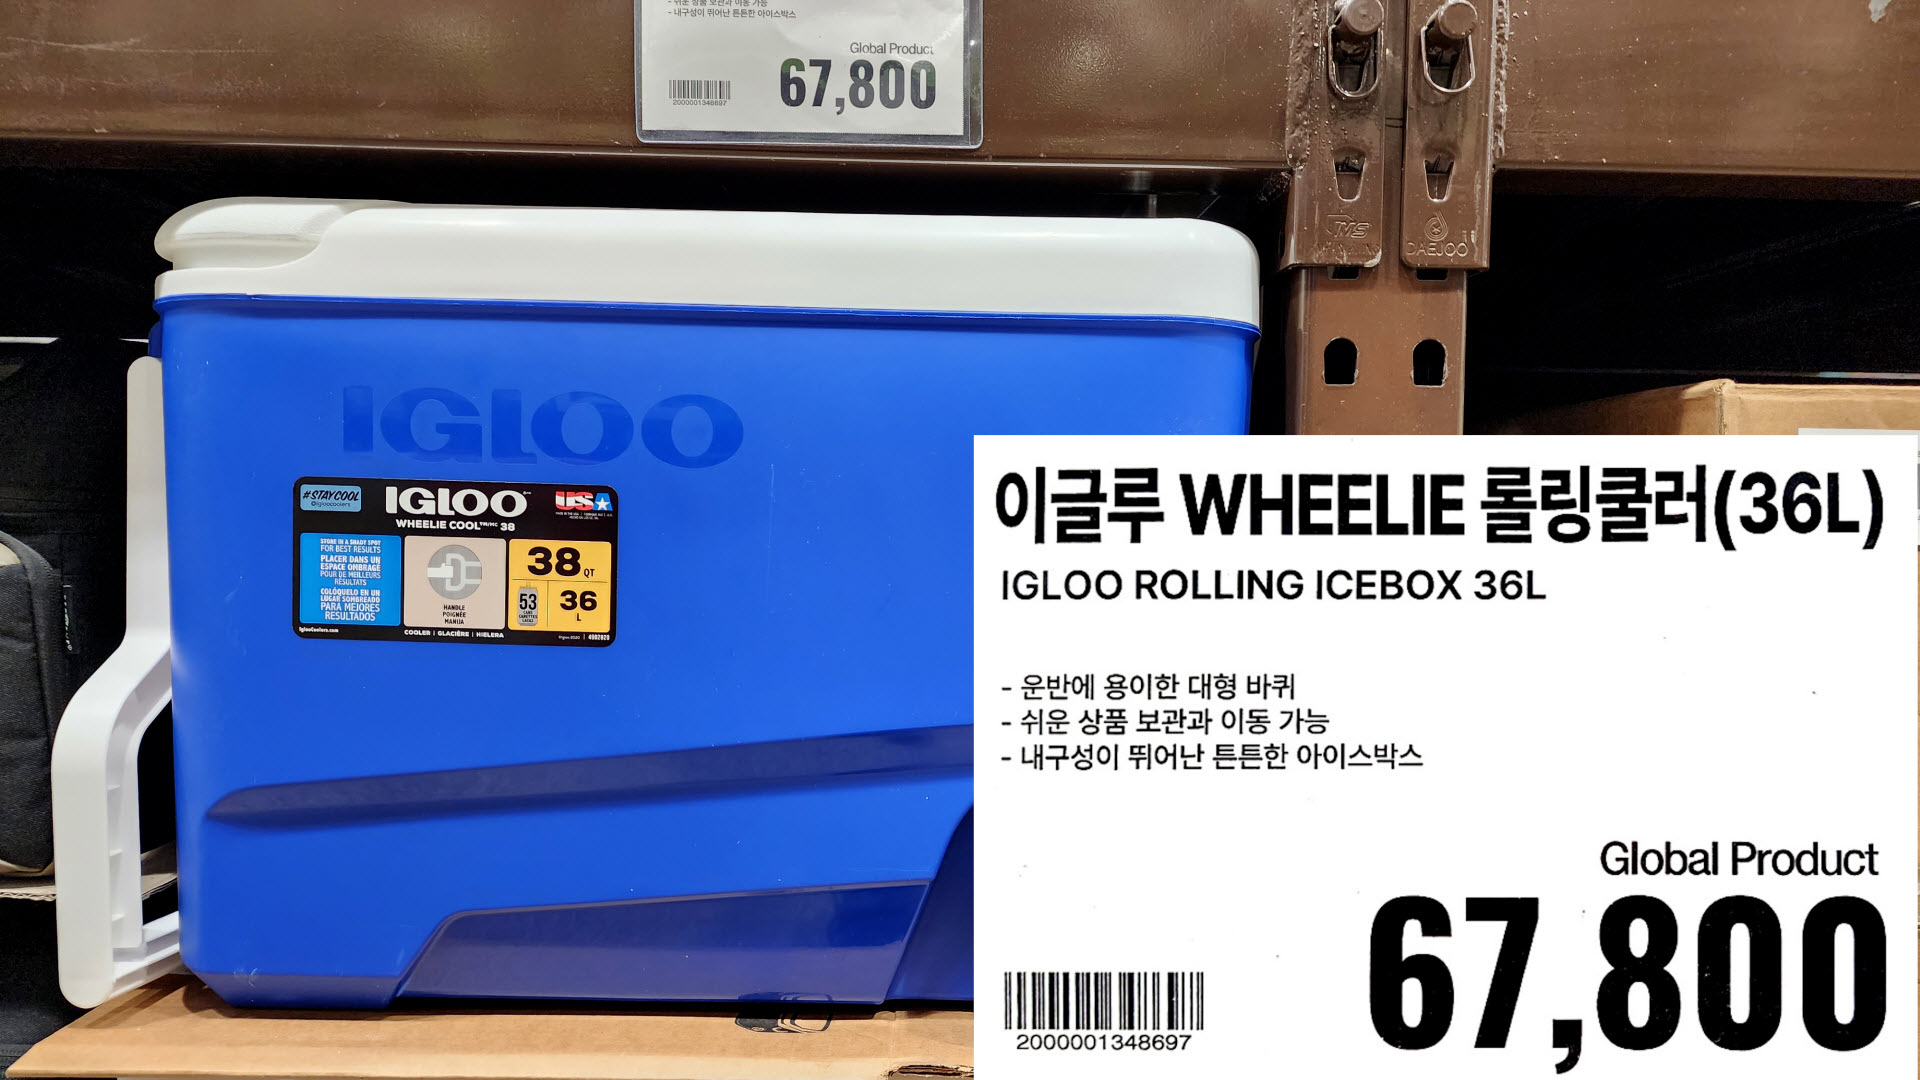 이글루 WHEELIE 롤링쿨러(36L)
IGLOO ROLLING ICEBOX 36L
ㆍ운반에 용이한 대형 바퀴
・쉬운 상품 보관과 이동 가능
- 내구성이 뛰어난 튼튼한 아이스박스
67&#44;800